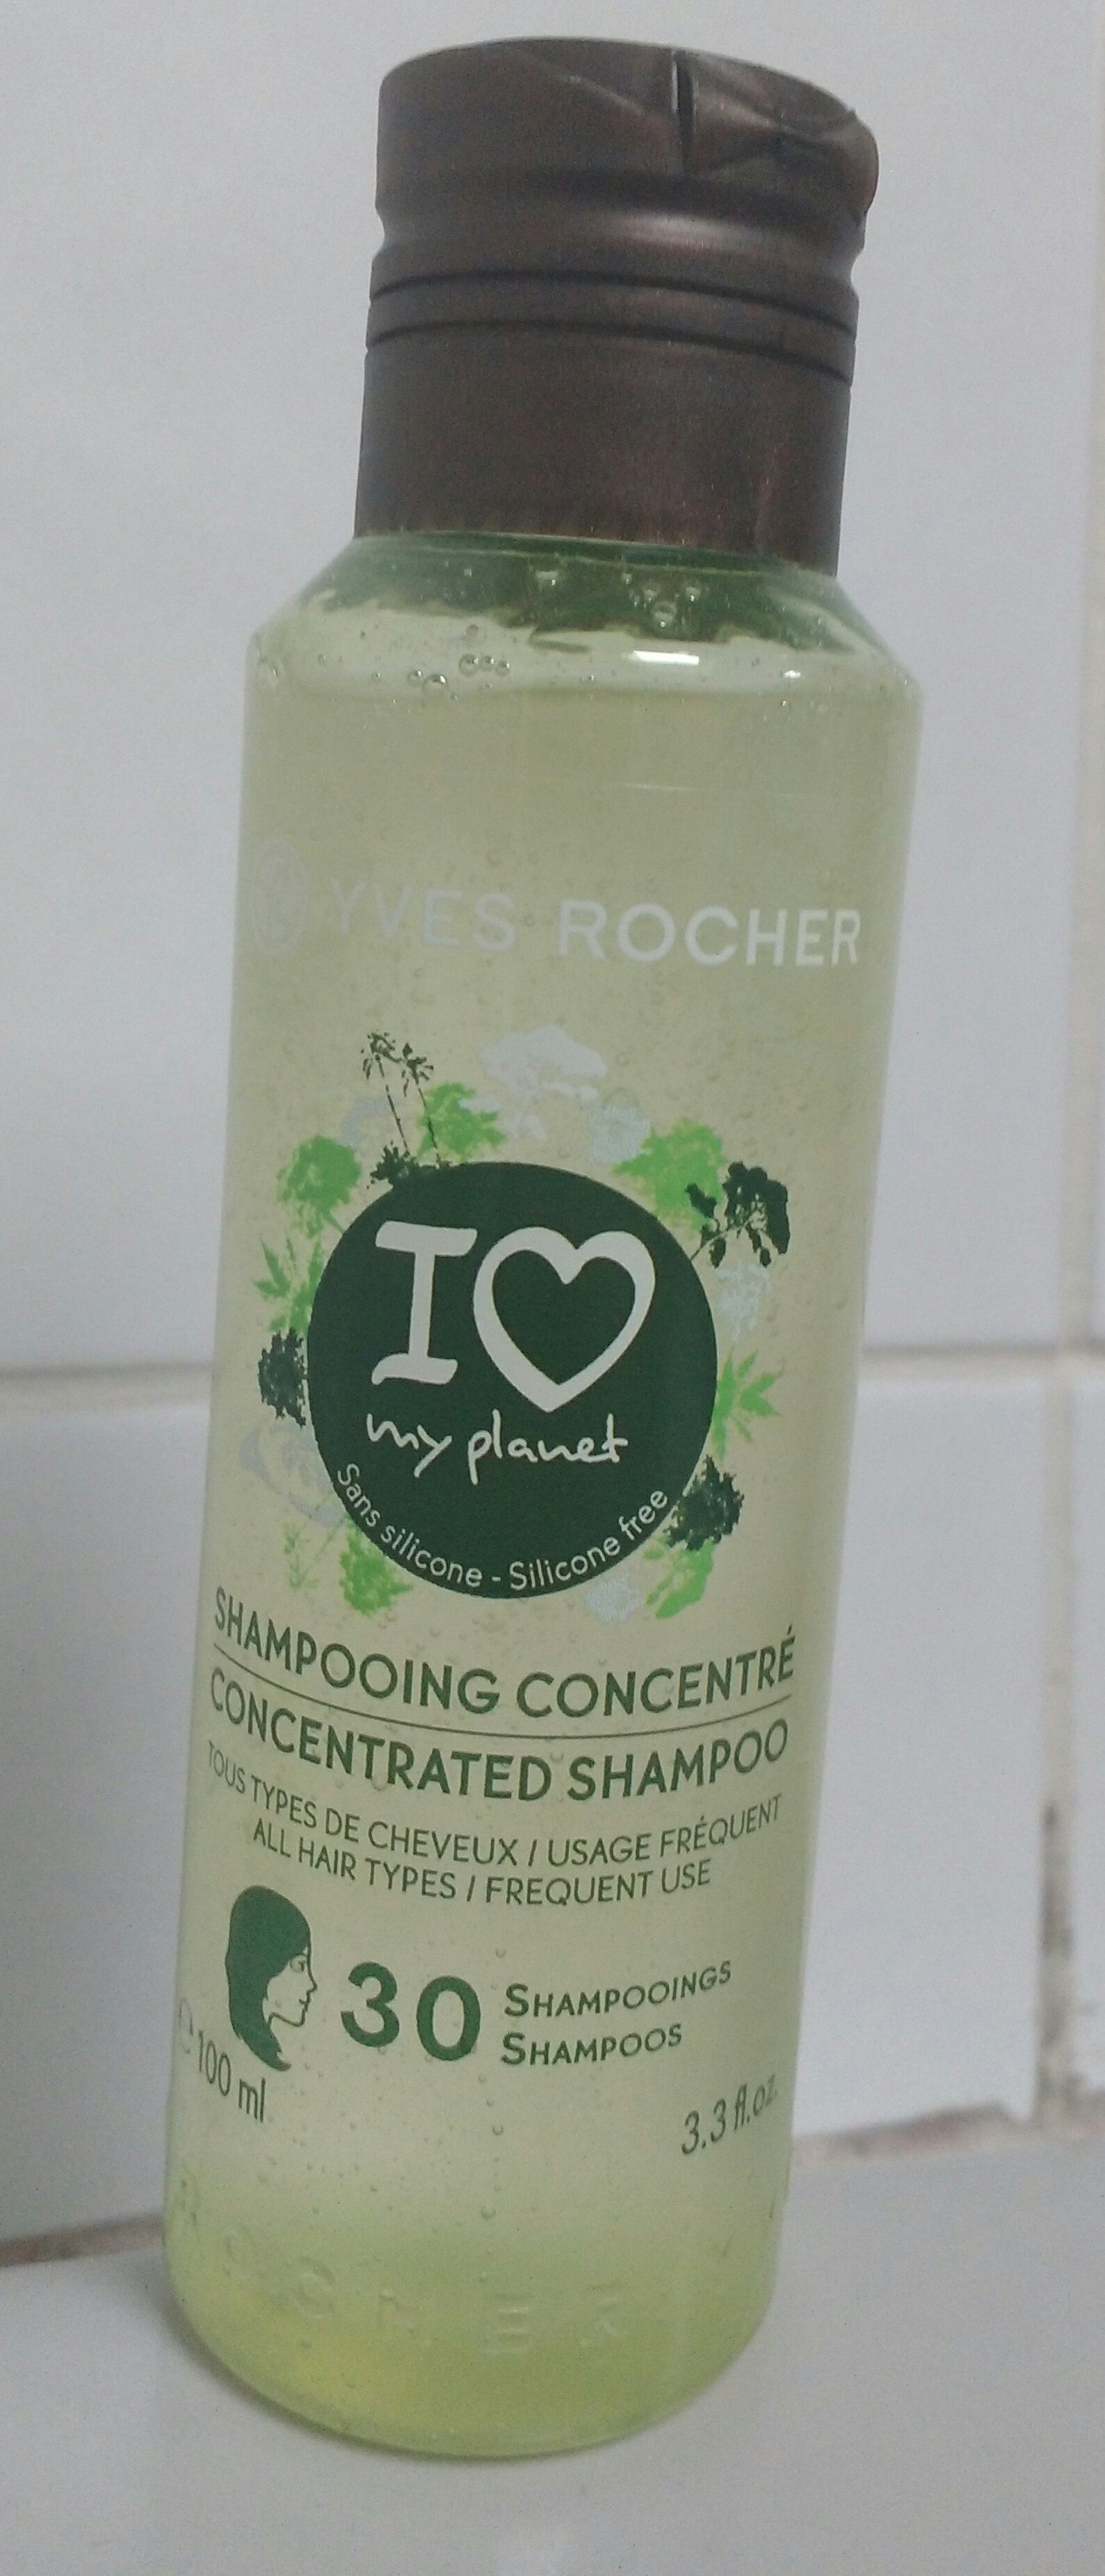 Shampooing concentré - Tous types de cheveux - Produit - fr